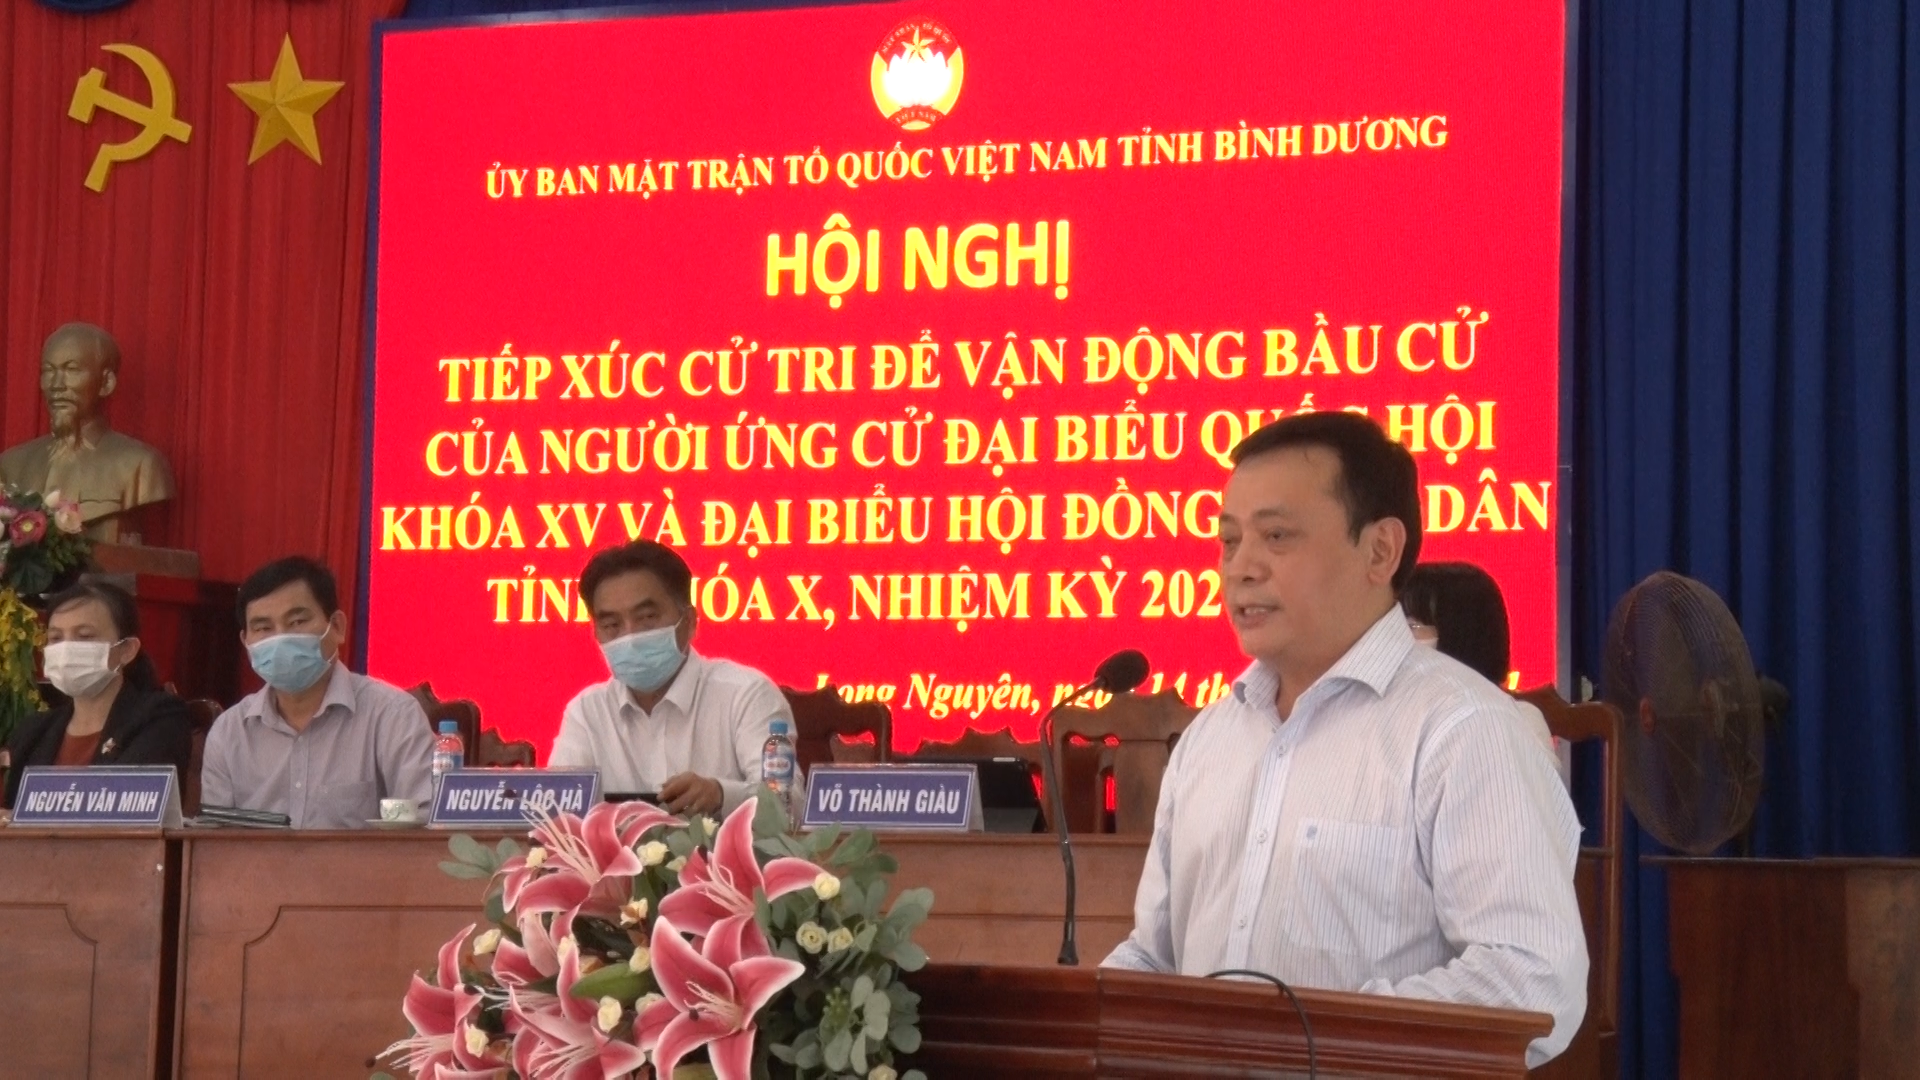 Người ứng cử đại biểu Quốc hội, HĐND tỉnh tiếp xúc cử tri để vận động bầu cử tại xã Long Nguyên và Lai Hưng